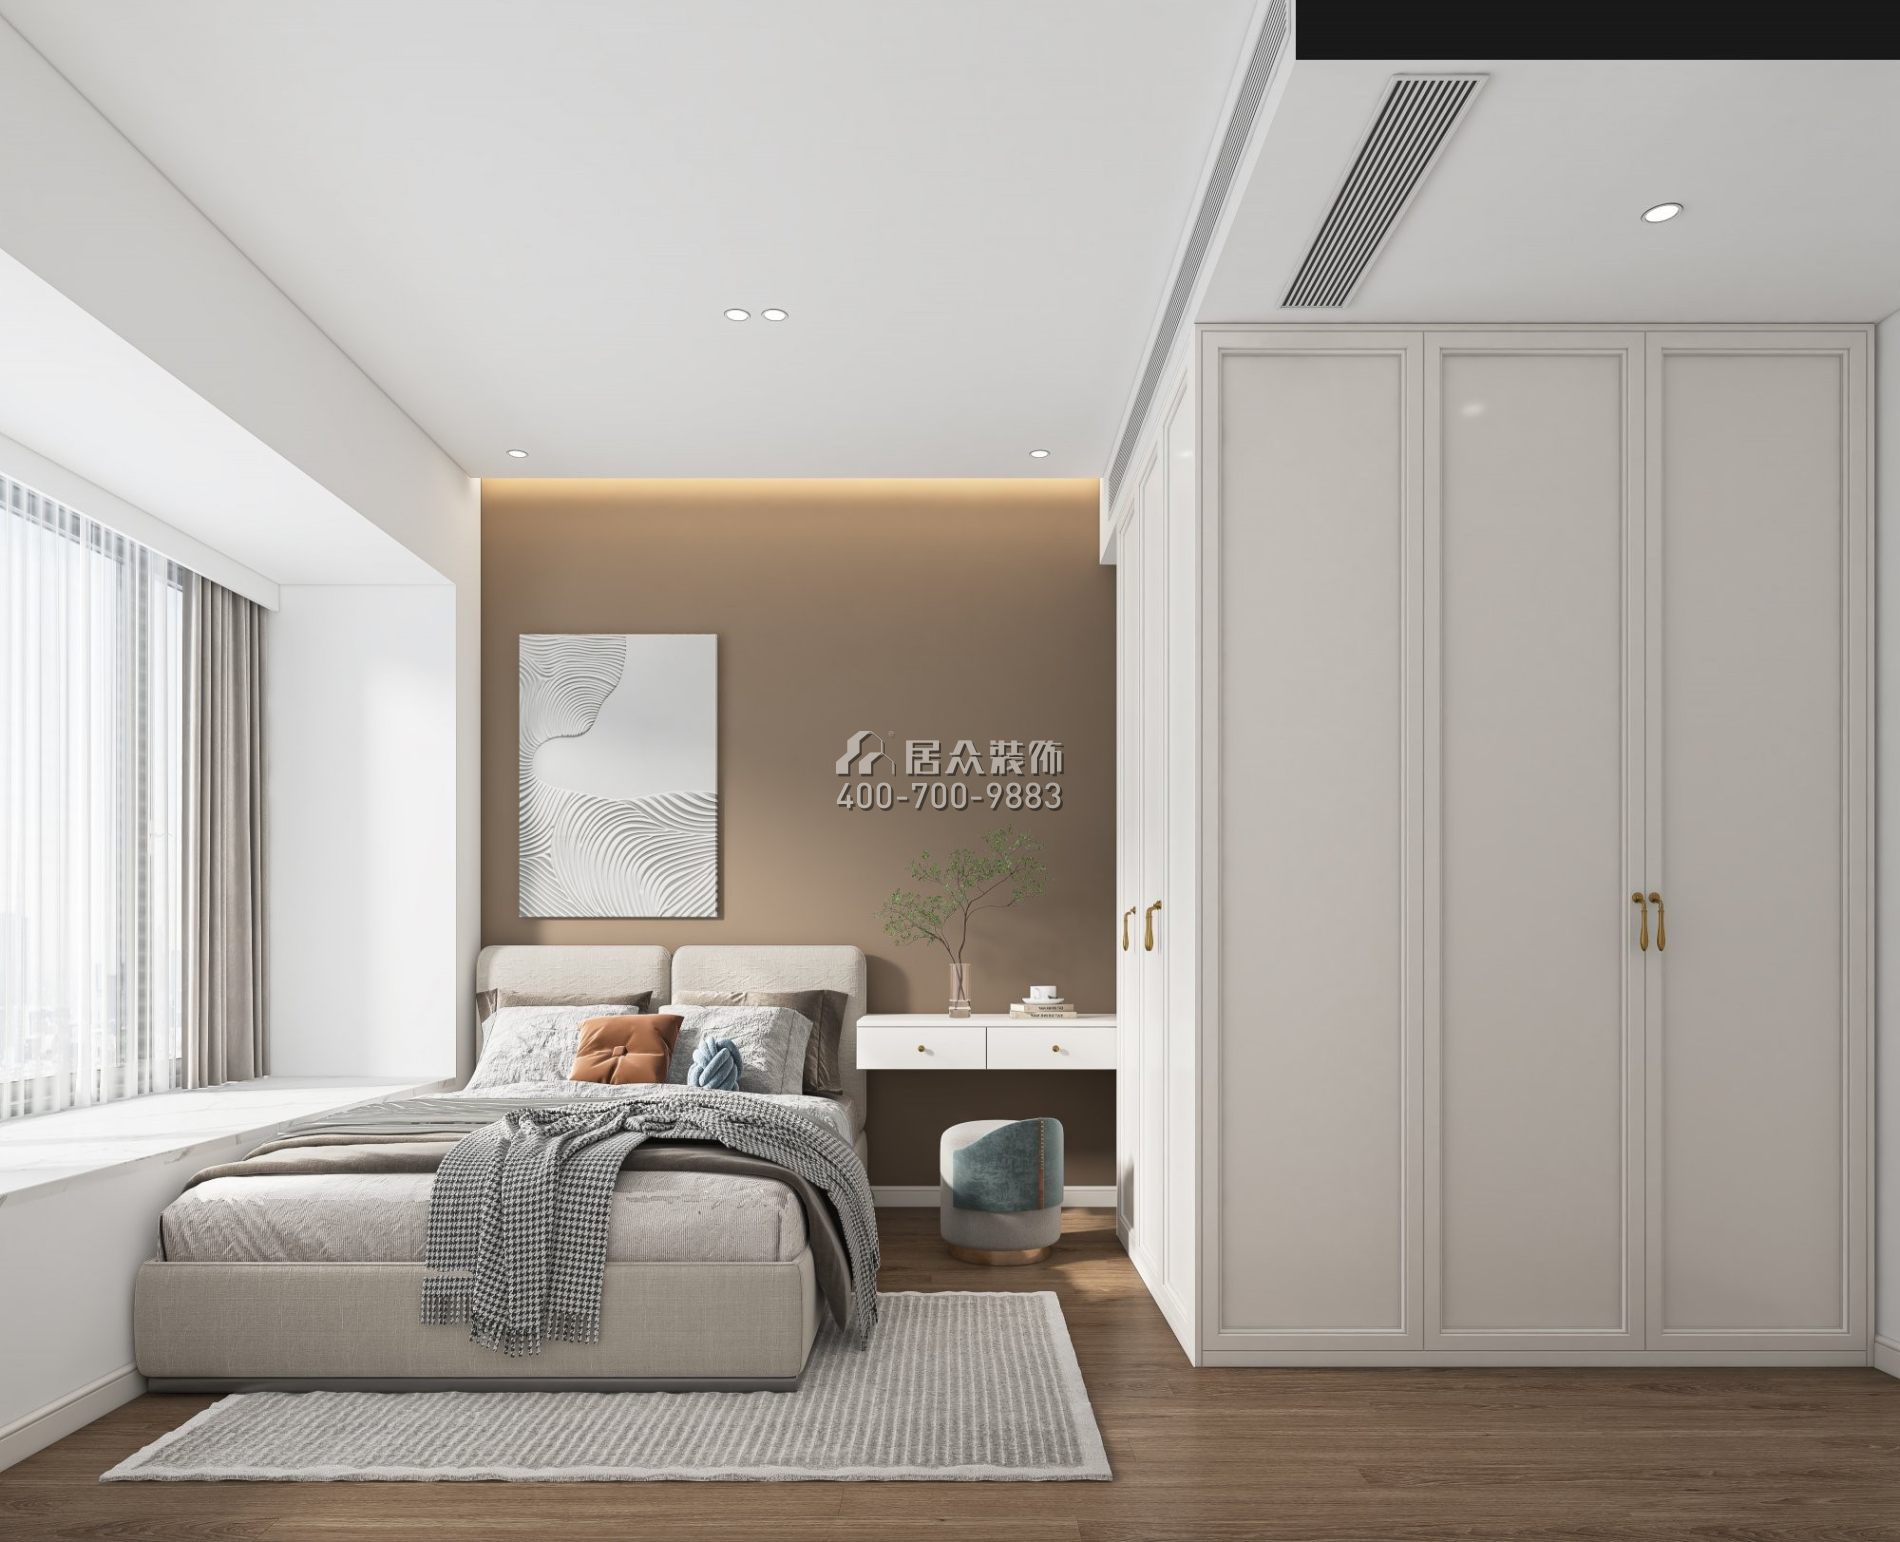 深鐵閱山鏡88平方米現代簡約風格平層戶型臥室裝修效果圖